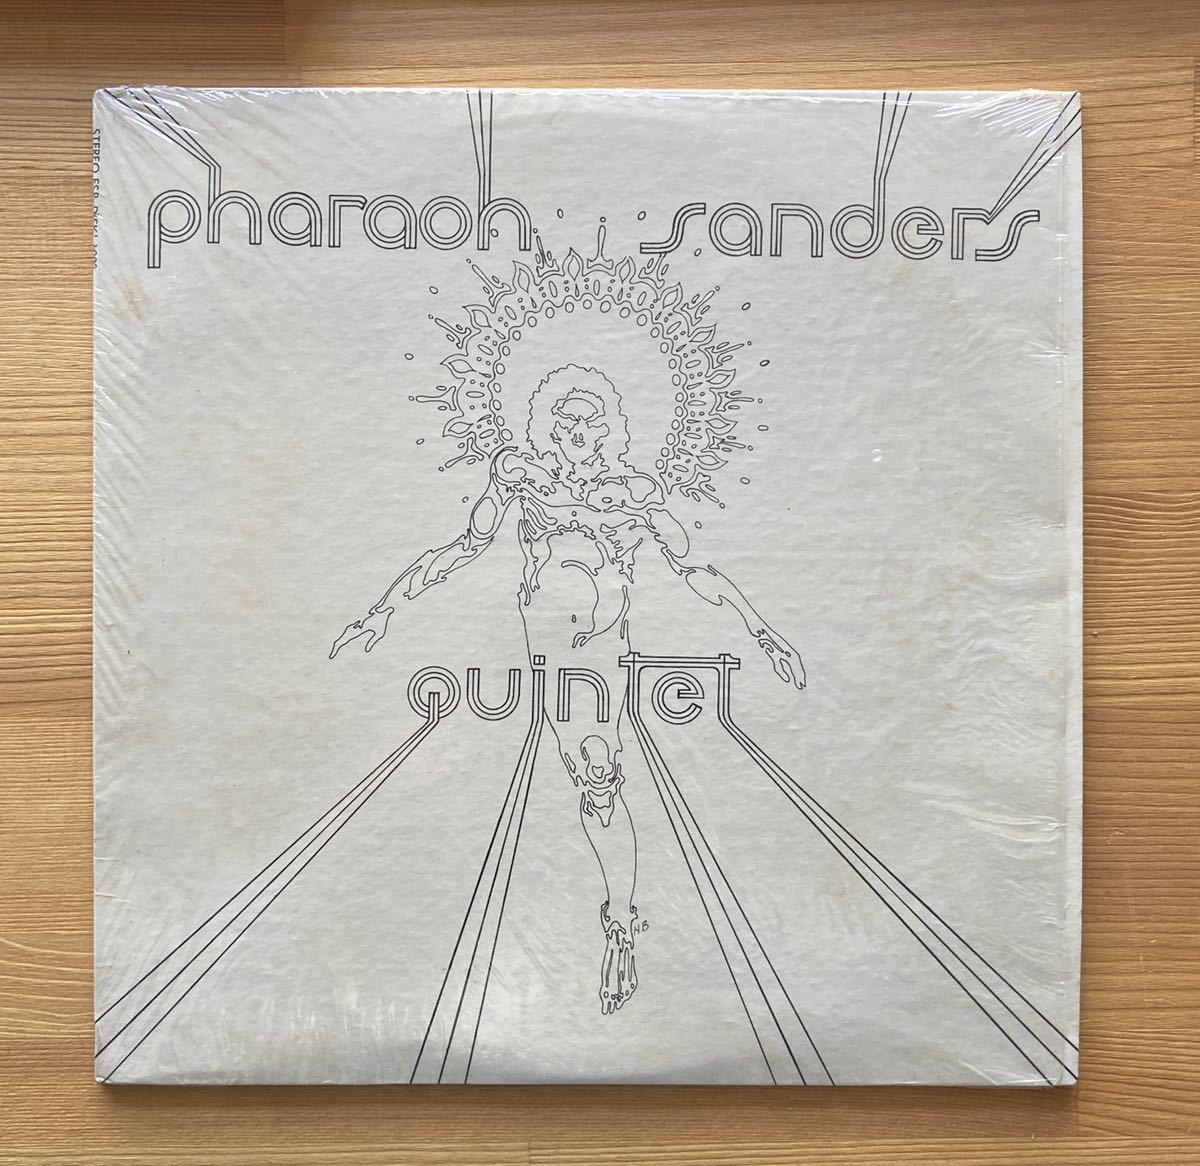 希少 US STEREO オリジナル盤 PHAROAH SANDERS QUINTET/ファラオ・サンダースクインテット/1965年/ESP-DISK-1003 スピリチュアルジャズ_画像1